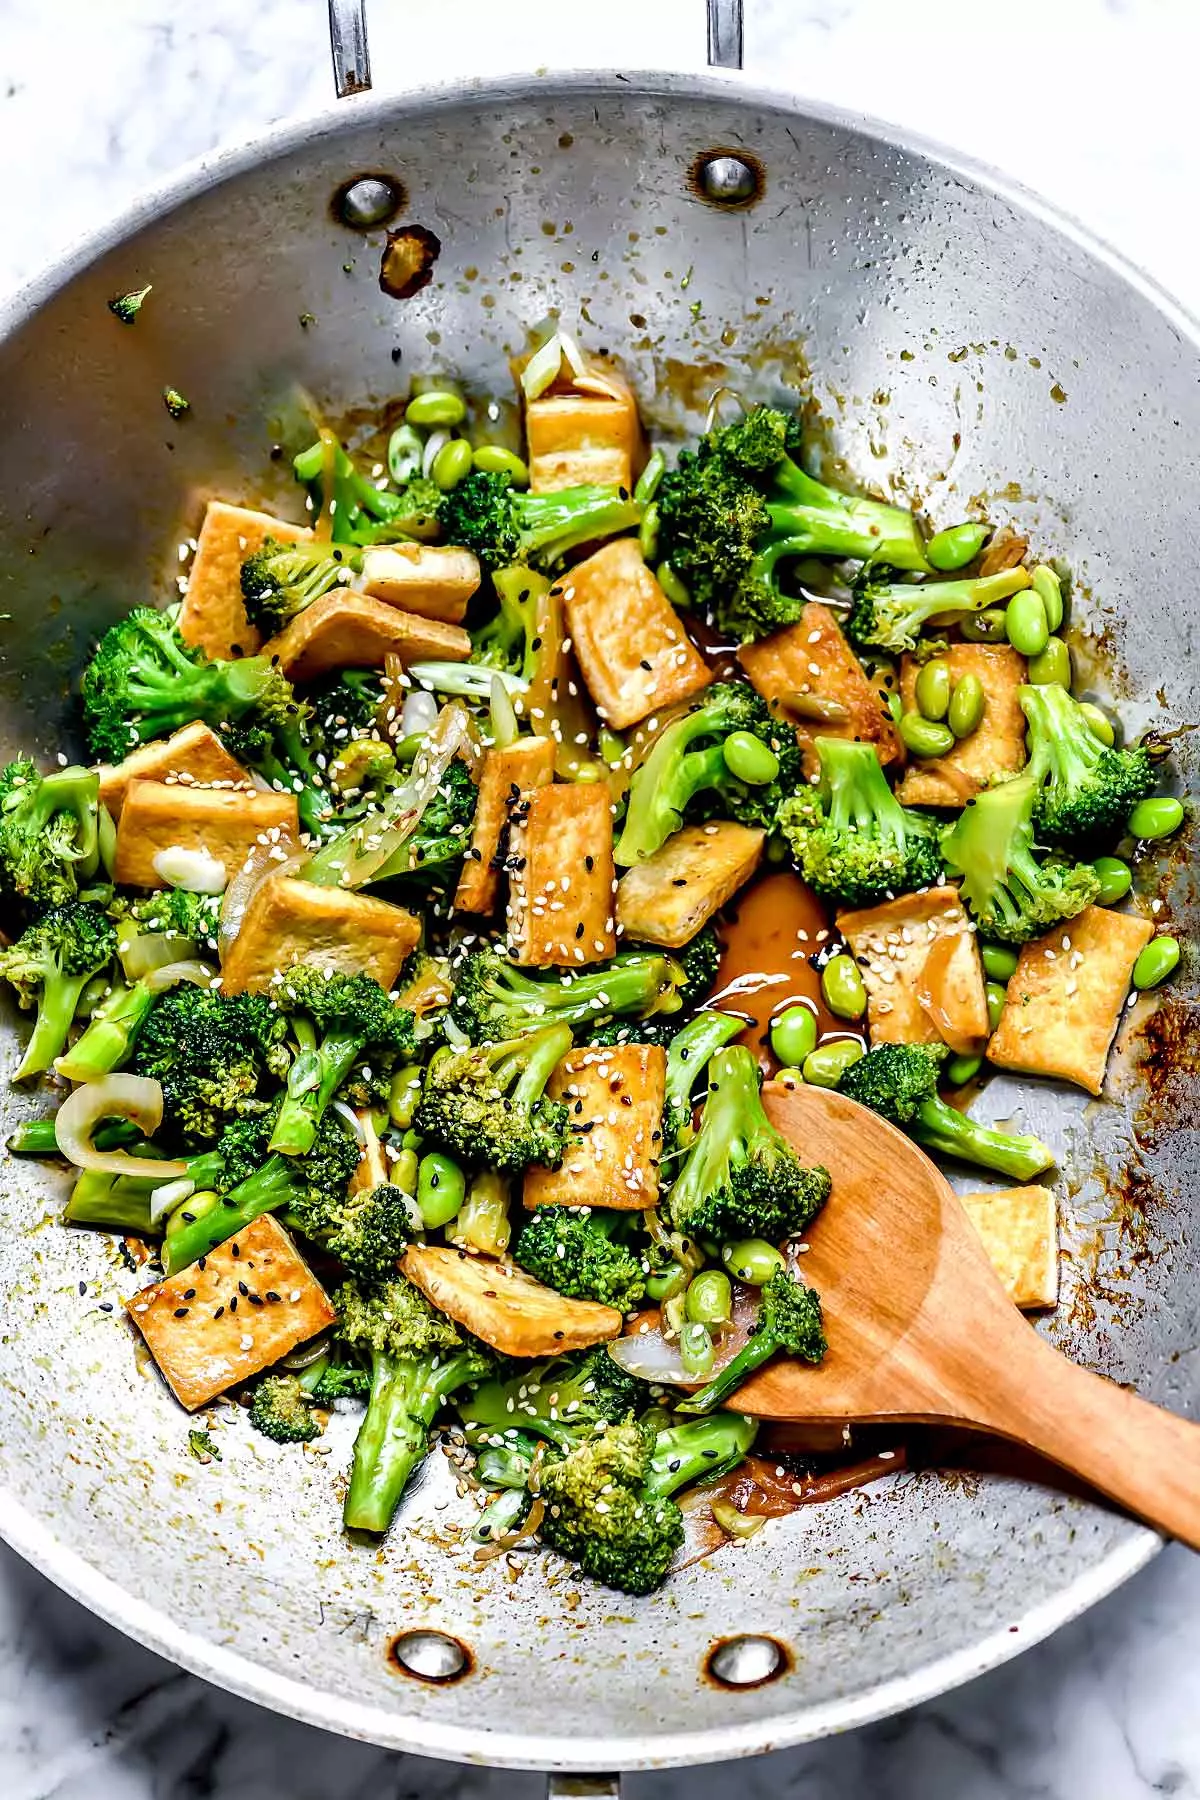 Teriyaki Tofu and Broccoli Stir Fry